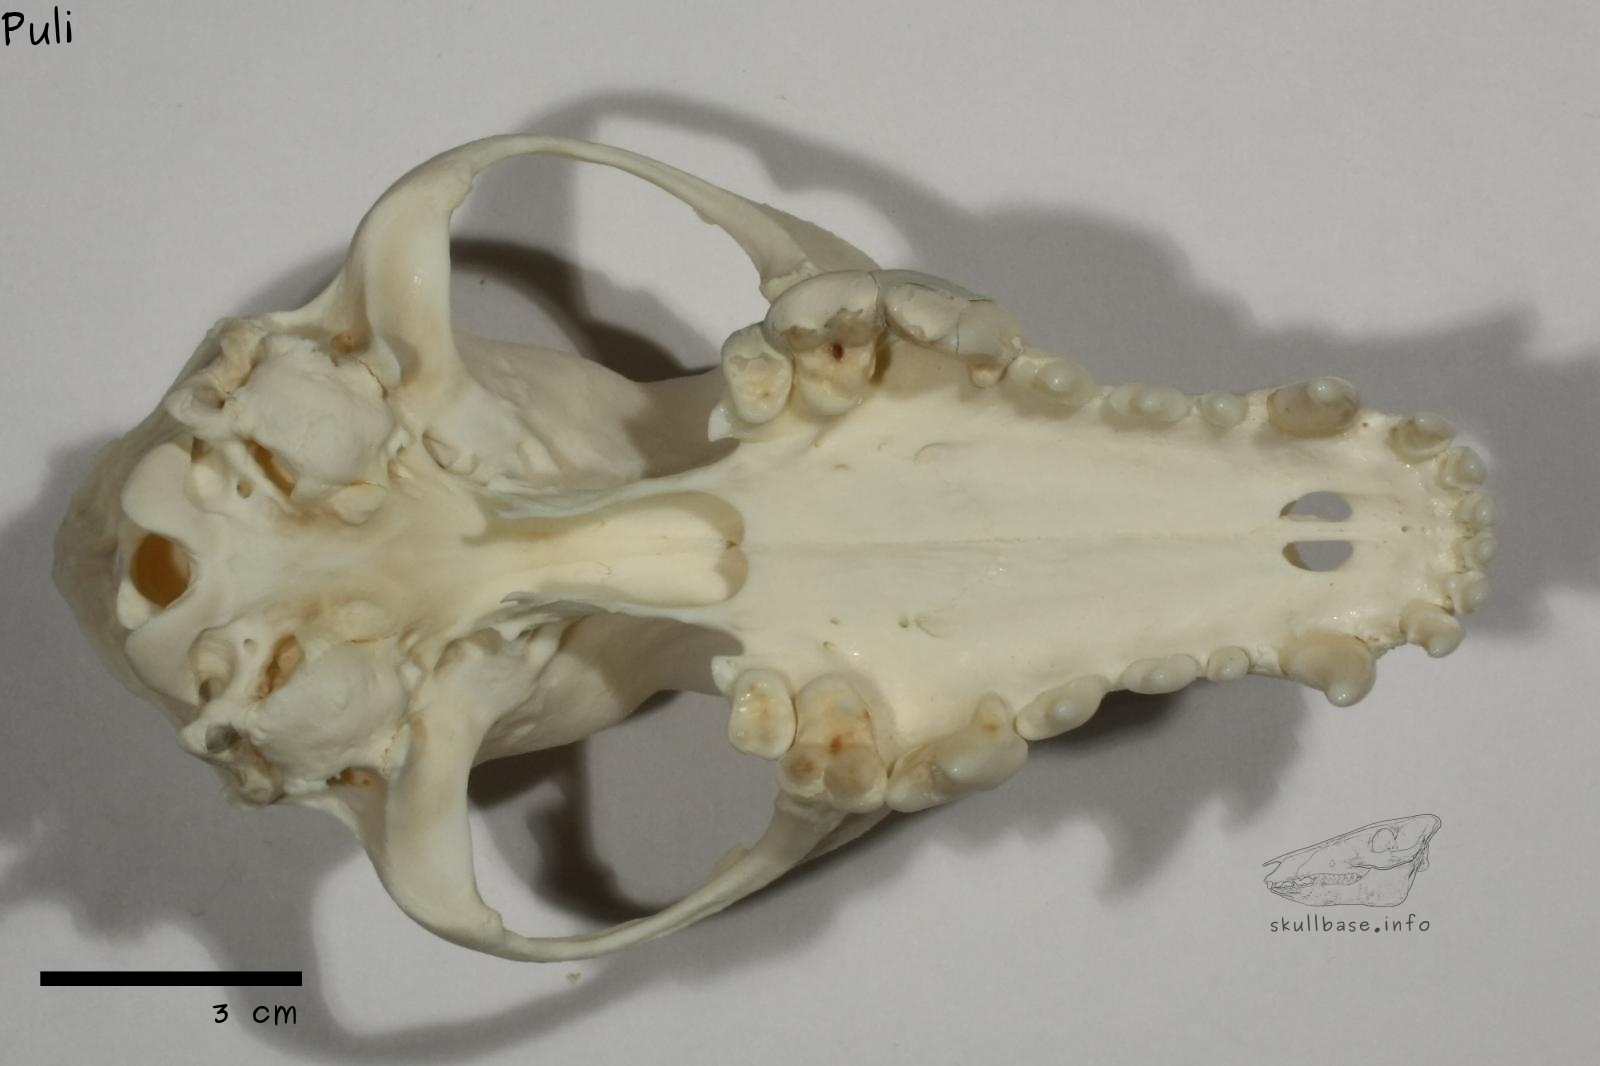 Puli (Canis lupus familiaris) skull ventral view